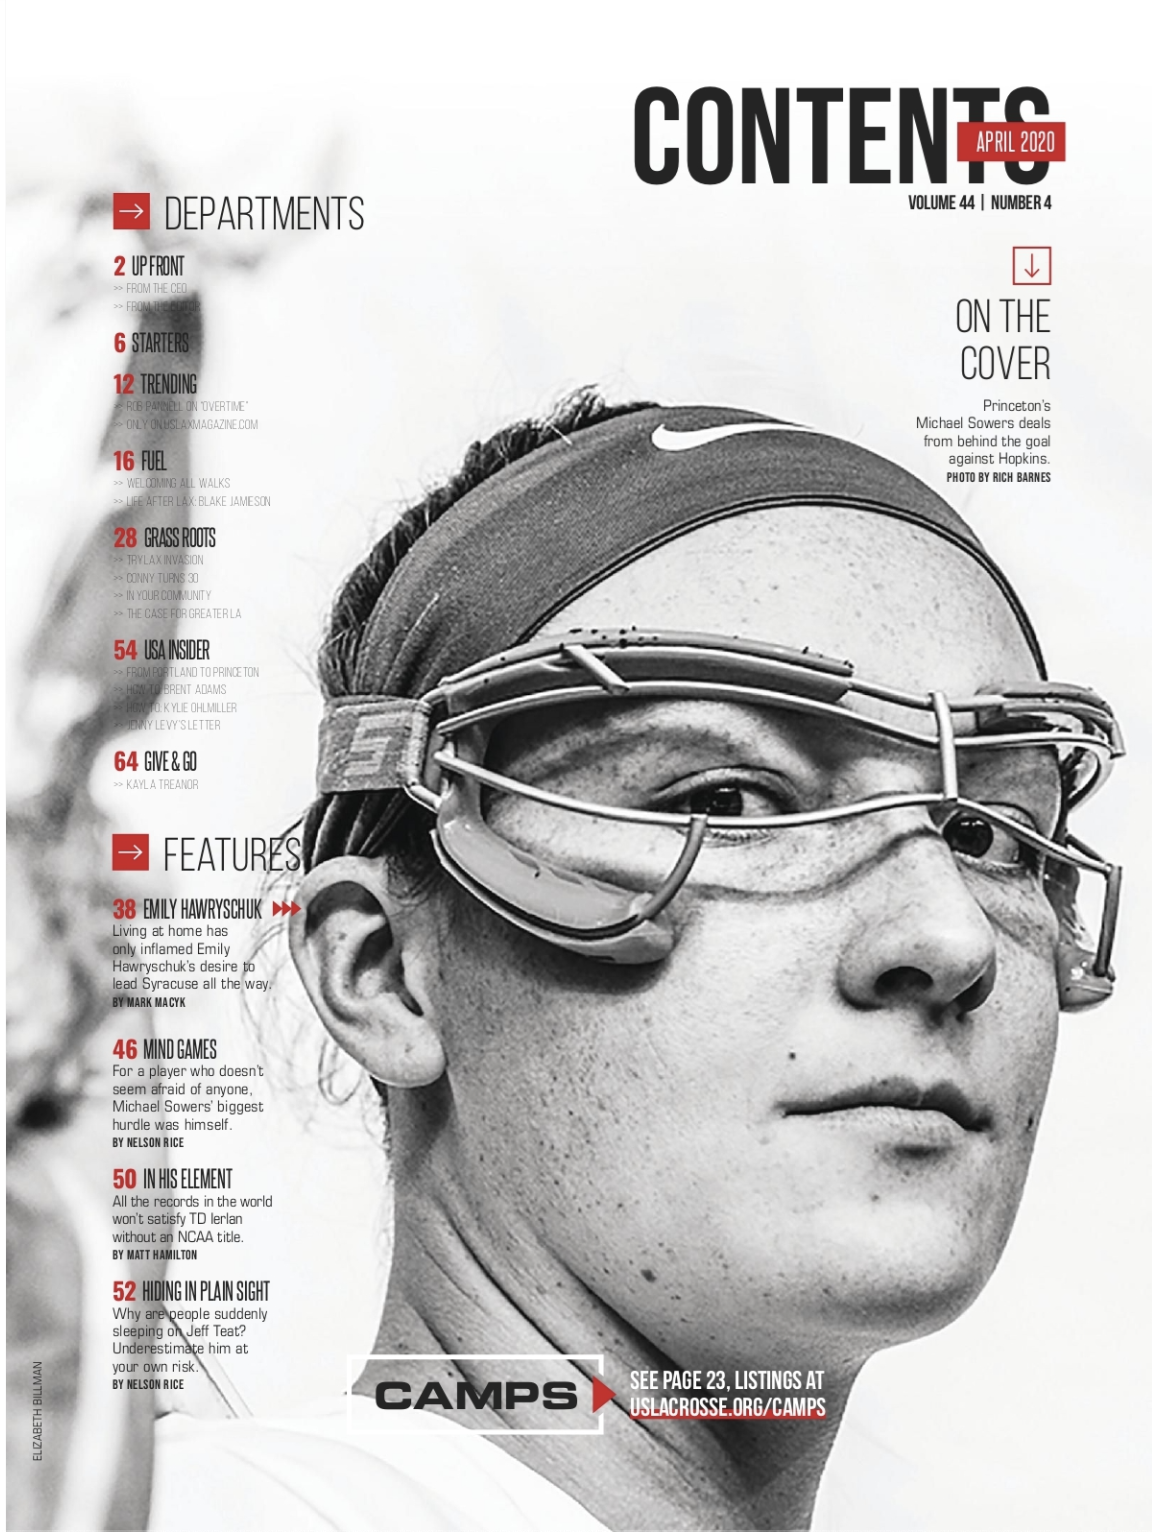 US Lacrosse Magazine- Emily Hawryschuk